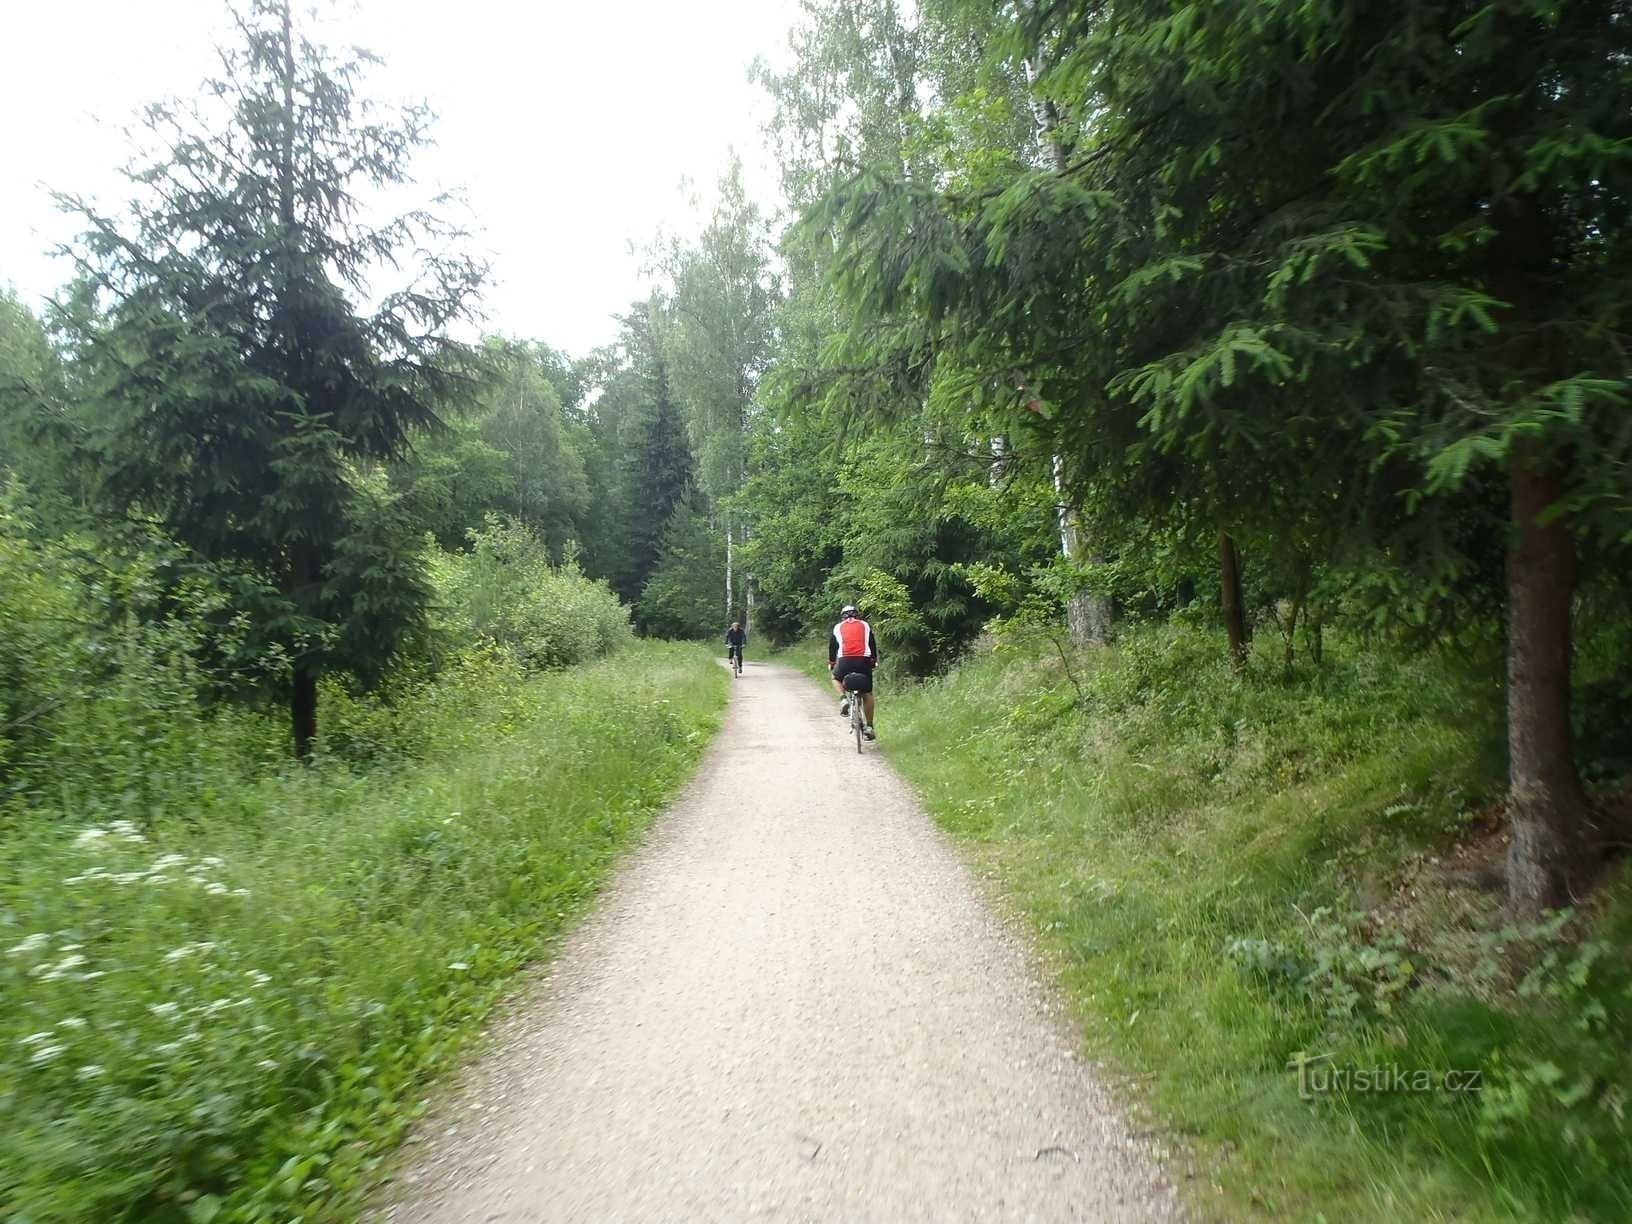 Đường rừng từ Stříbrné rybník đến ngã tư U Svinar - 17.6.2012